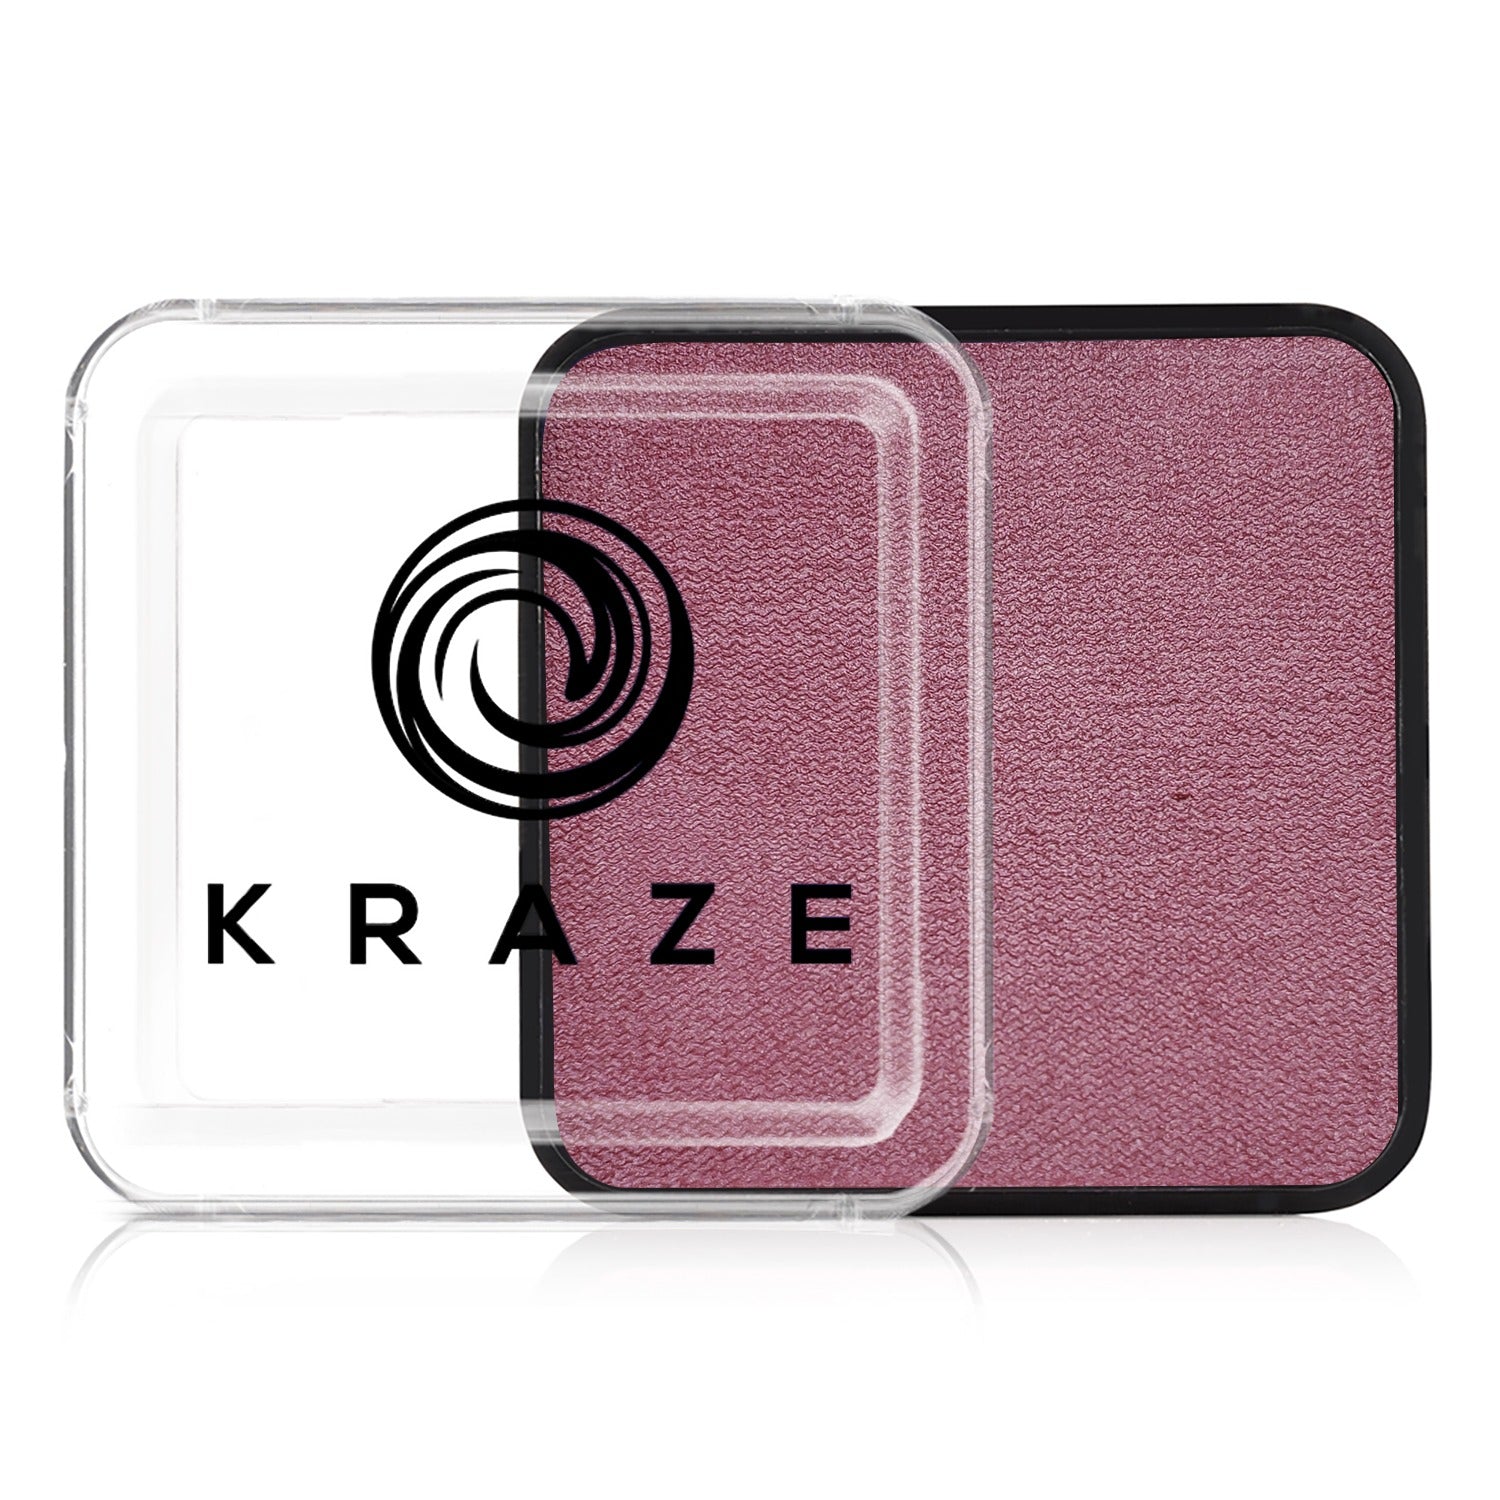 Kraze FX Face Paint - Metallic Rose (25 gm)